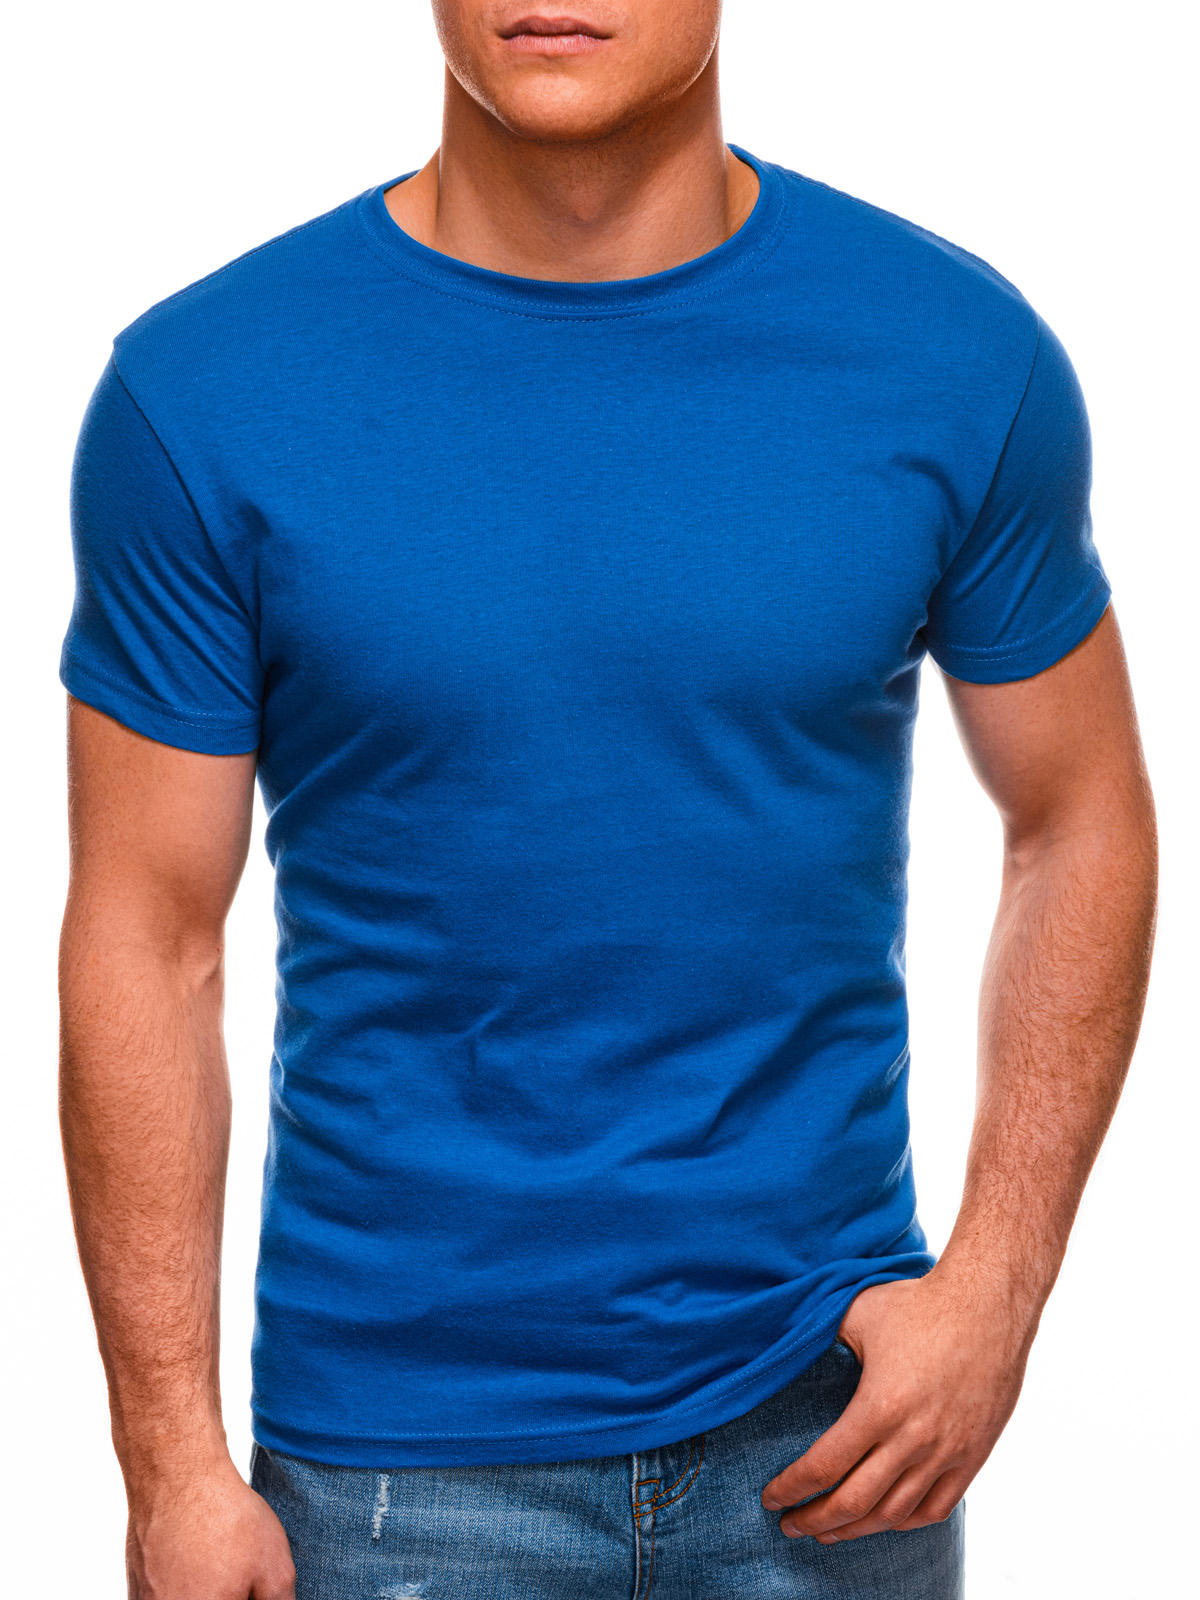 Men's plain t-shirt S970 - blue | MODONE wholesale - Clothing For Men